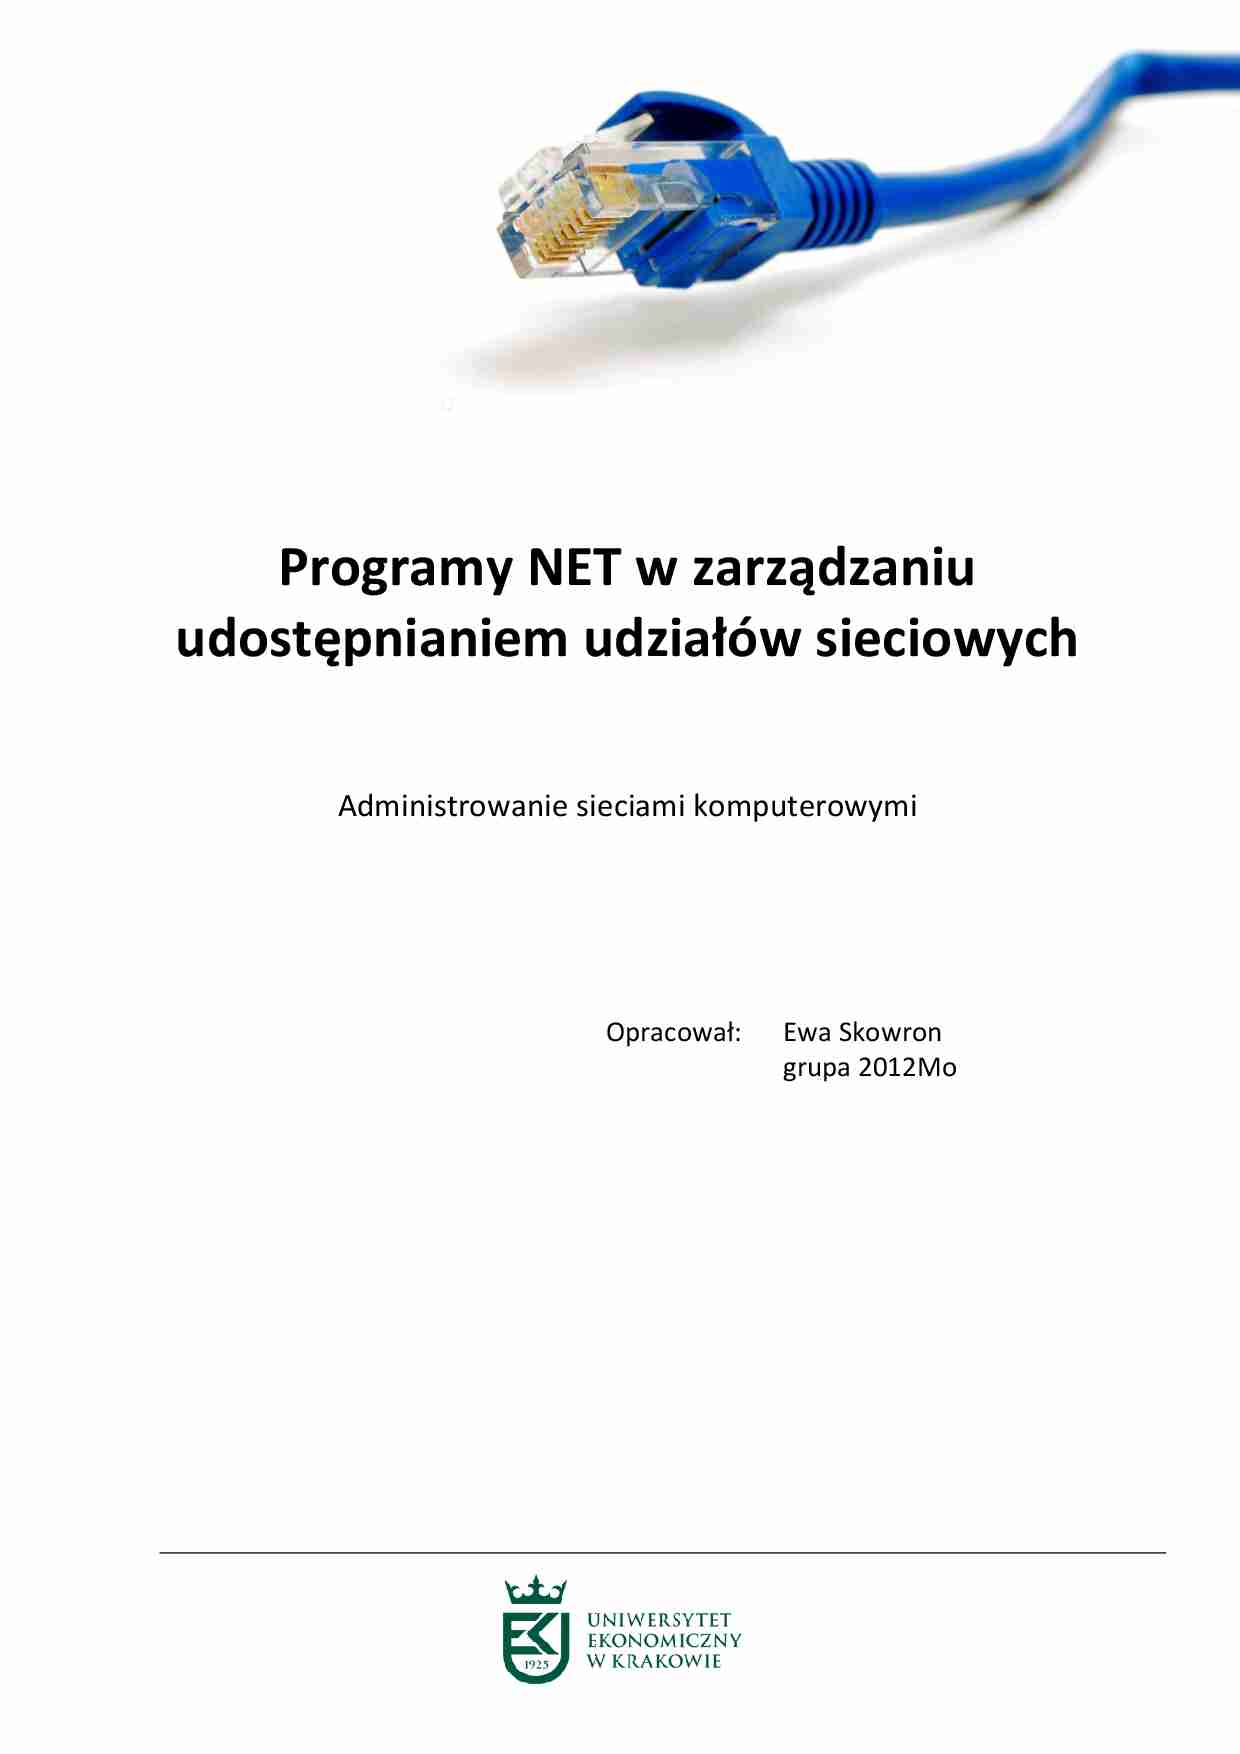 Programy NET w zarządzaniu udostępnianiem udziałów sieciowych - strona 1